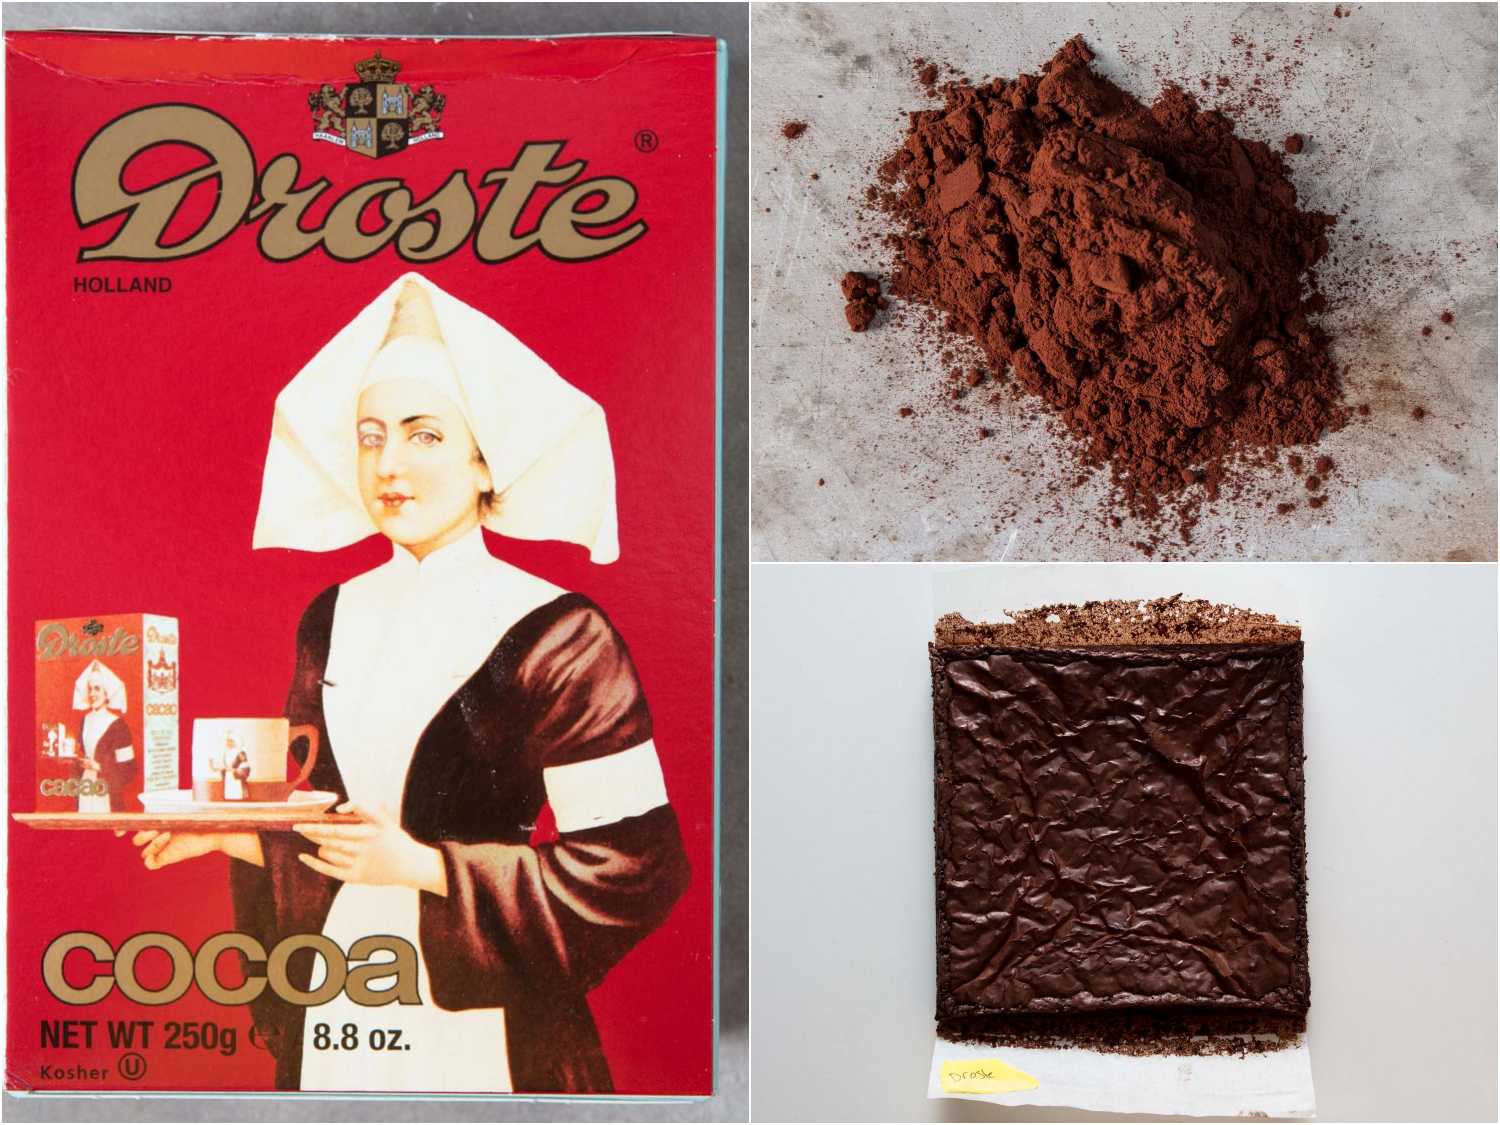 โดรสเต้ โกโก้ พาวเดอร์ 250 กรัม - โกโก้ พาวเดอร์ (เนเธอร์แลนด์) Droste Cocoa Powder (8.8 Oz) โดรสเต้ (ตรานางพยาบาล) เครื่องดื่มโกโก้ ชนิดผง สินค้าคุณภาพได้รับความเชื่อถือมานานกว่า 140 ปี การันตีความหอมอร่อย เข้มข้น เหมาะสำหรับทำเป็นเครื่องดื่มโกโก้ร้อน